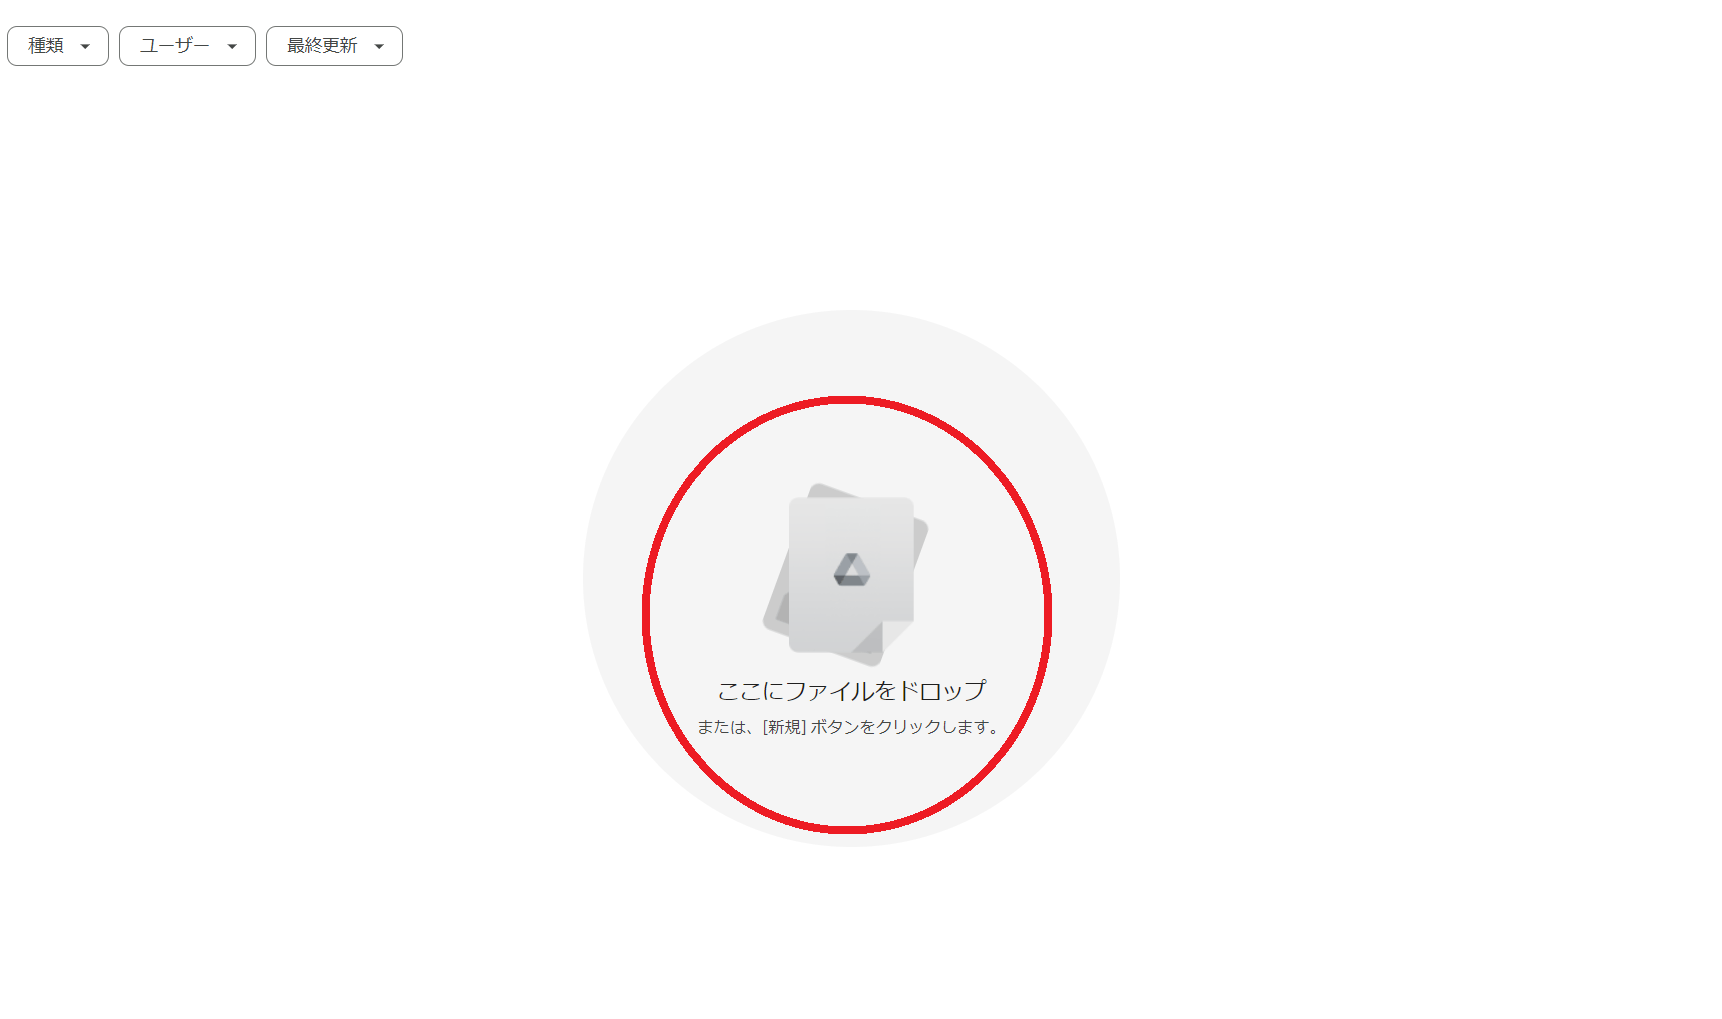 赤丸で囲んだ画面「ここにファイルをドロップ」の周辺でマウスを右クリック